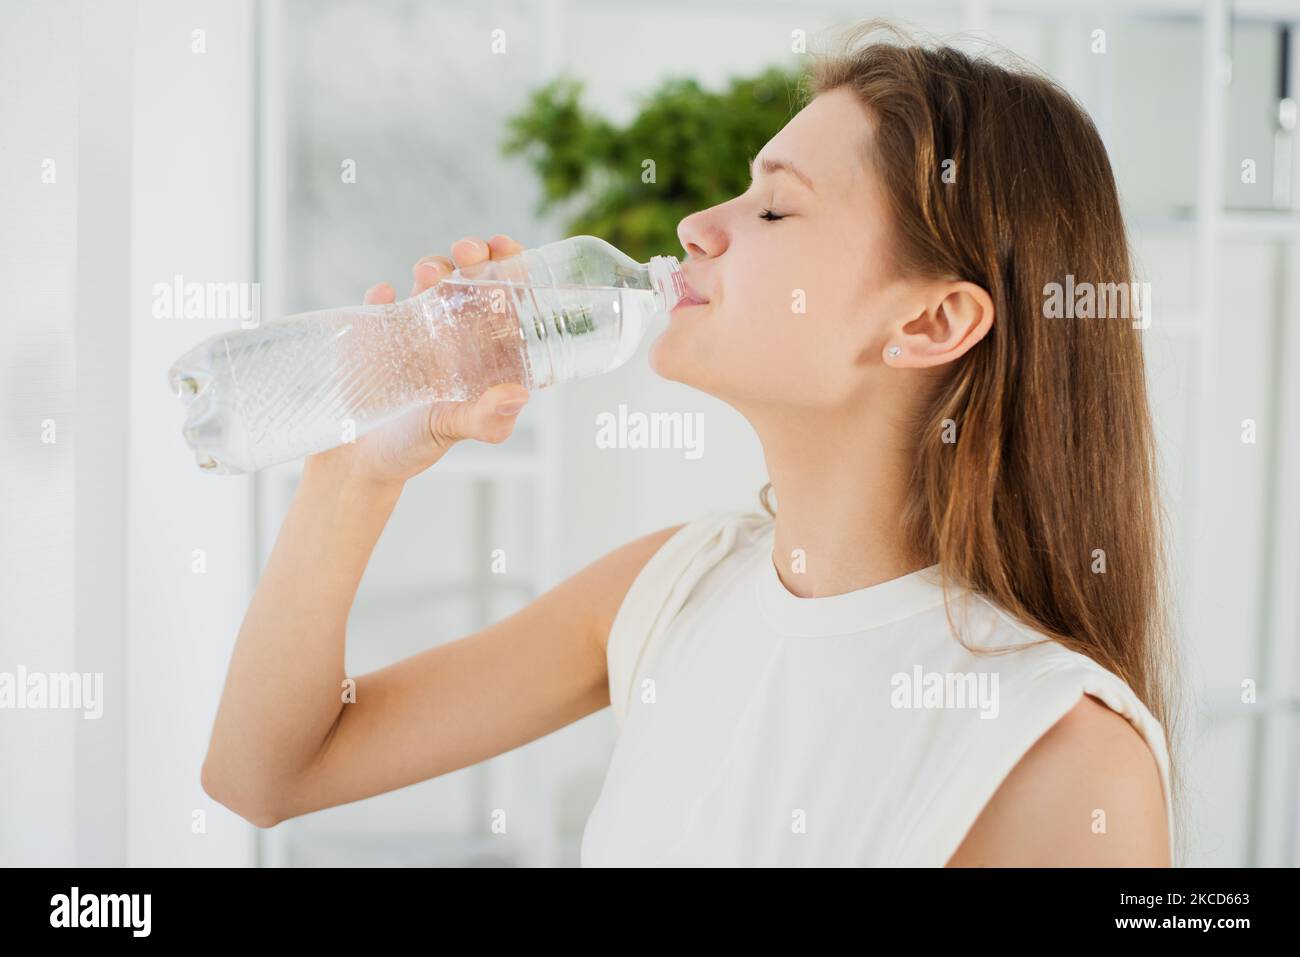 Jeune femme sportive une eau potable dans une bouteille en plastique debout par fenêtre à la maison, Santé, gens, nourriture, sports, concept de style de vie et de beauté Banque D'Images